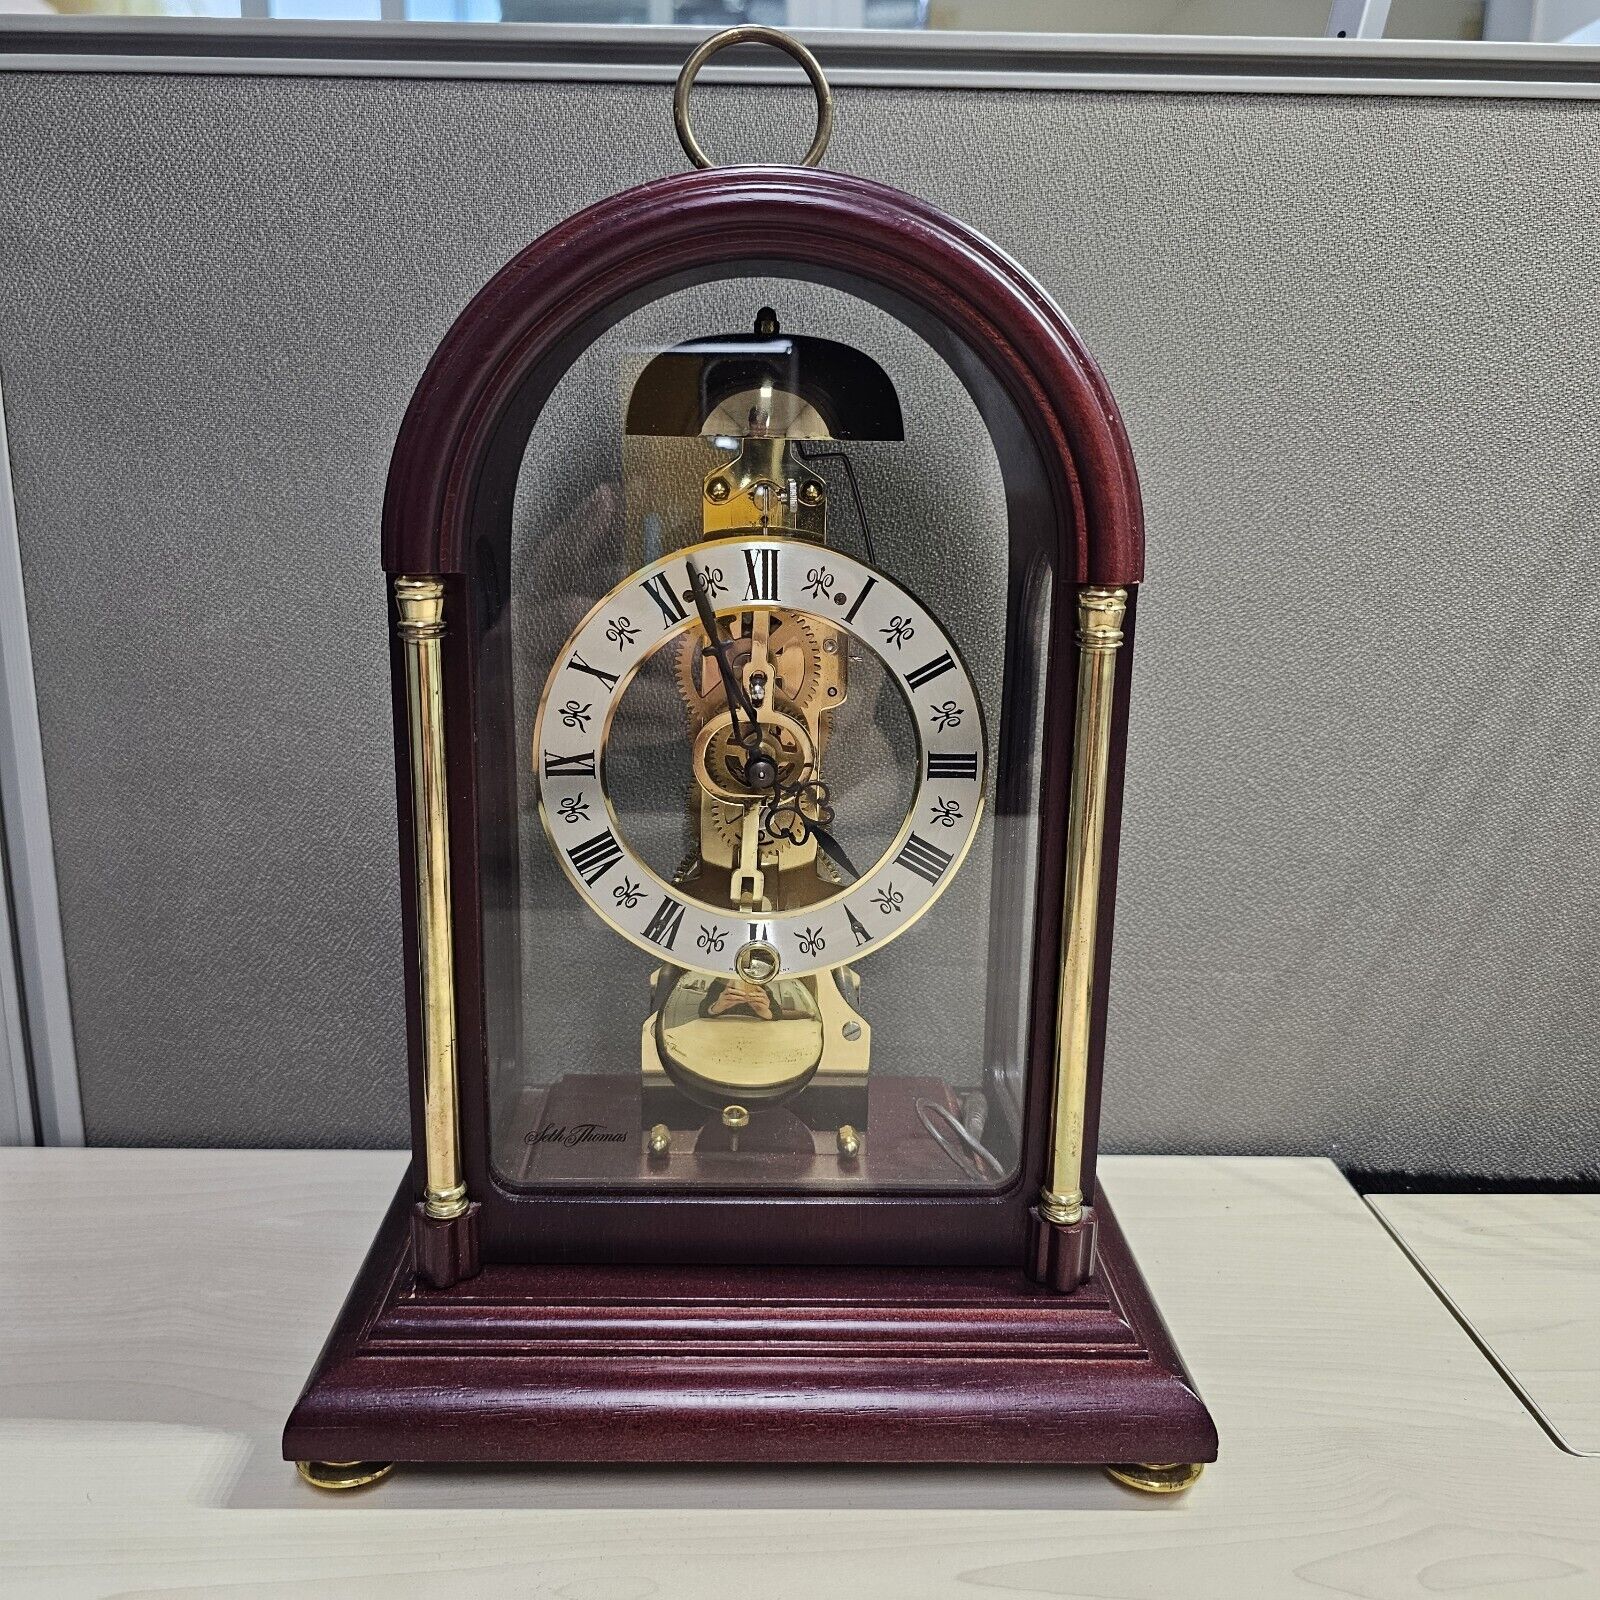 Franz Hermle Mantel Clock Mahogany with Key #791-081 (1987)